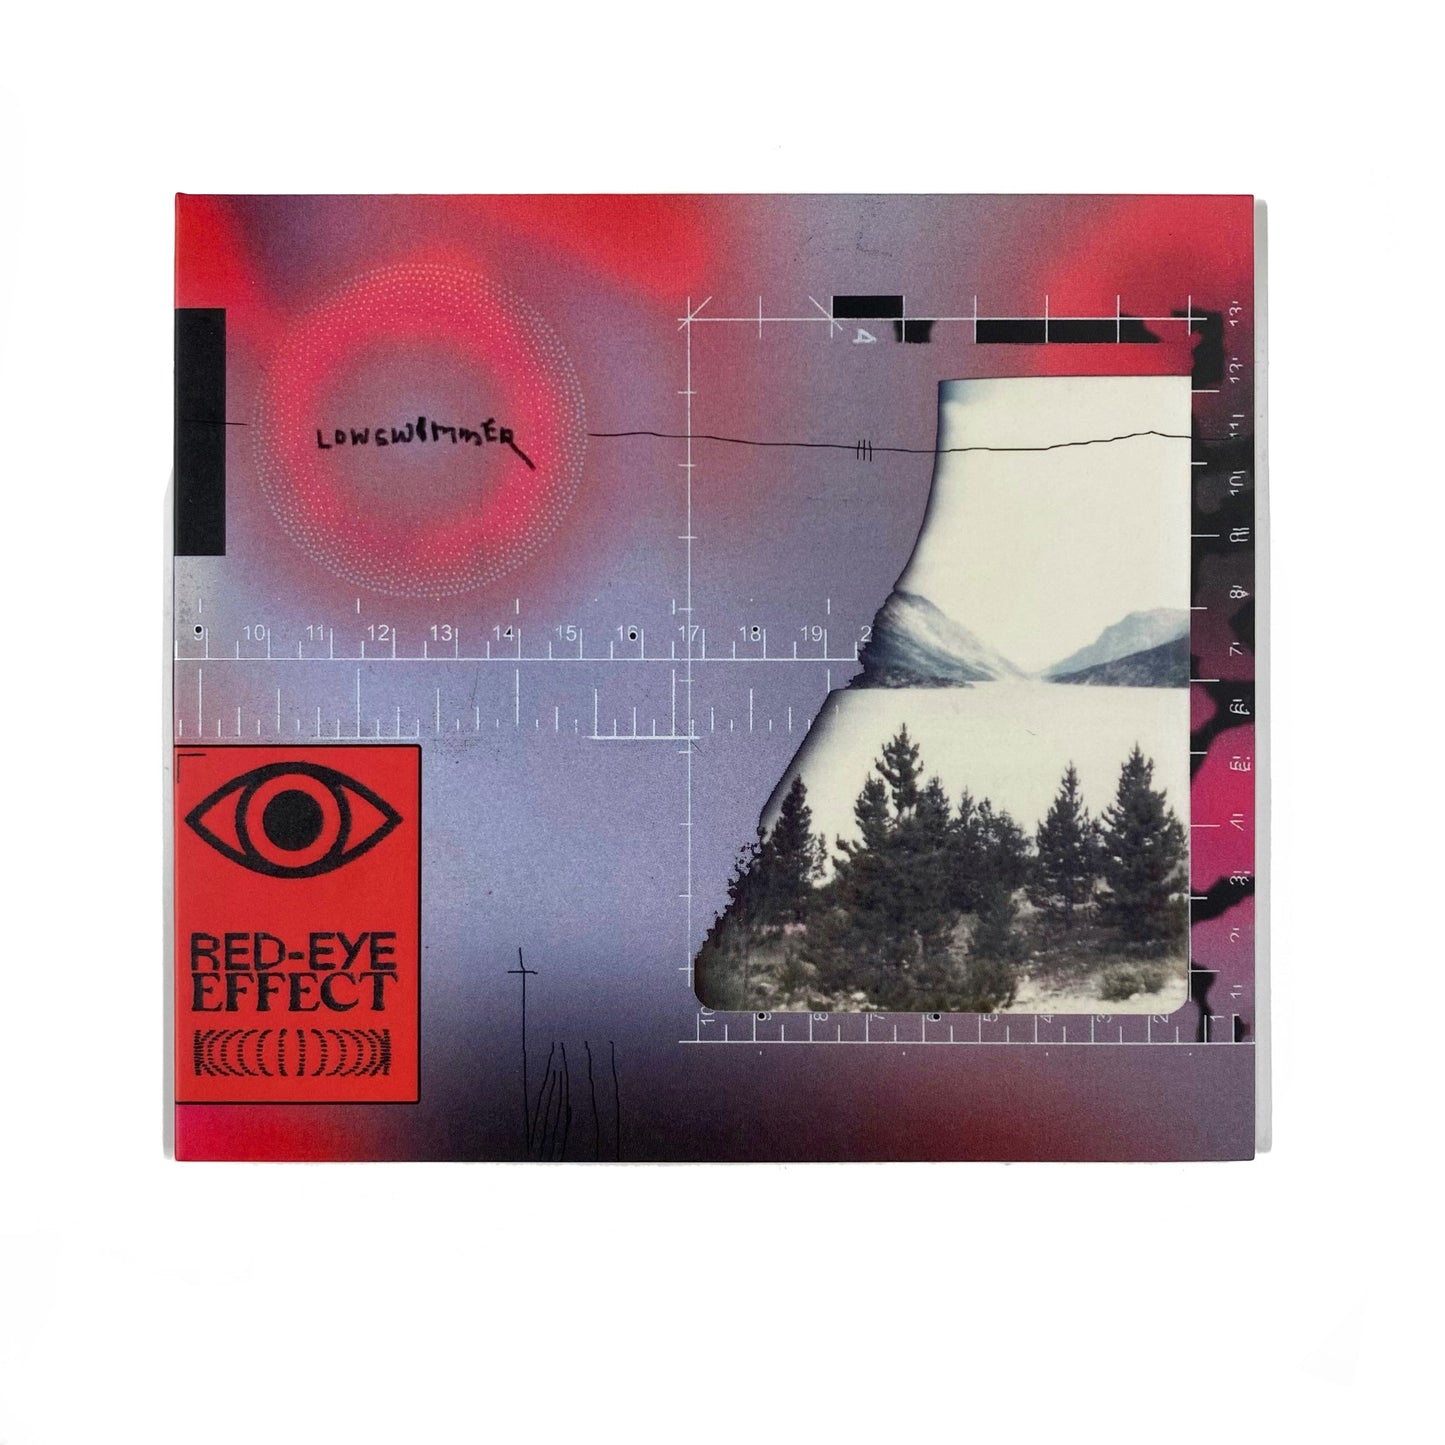 Red-Eye Effect CD